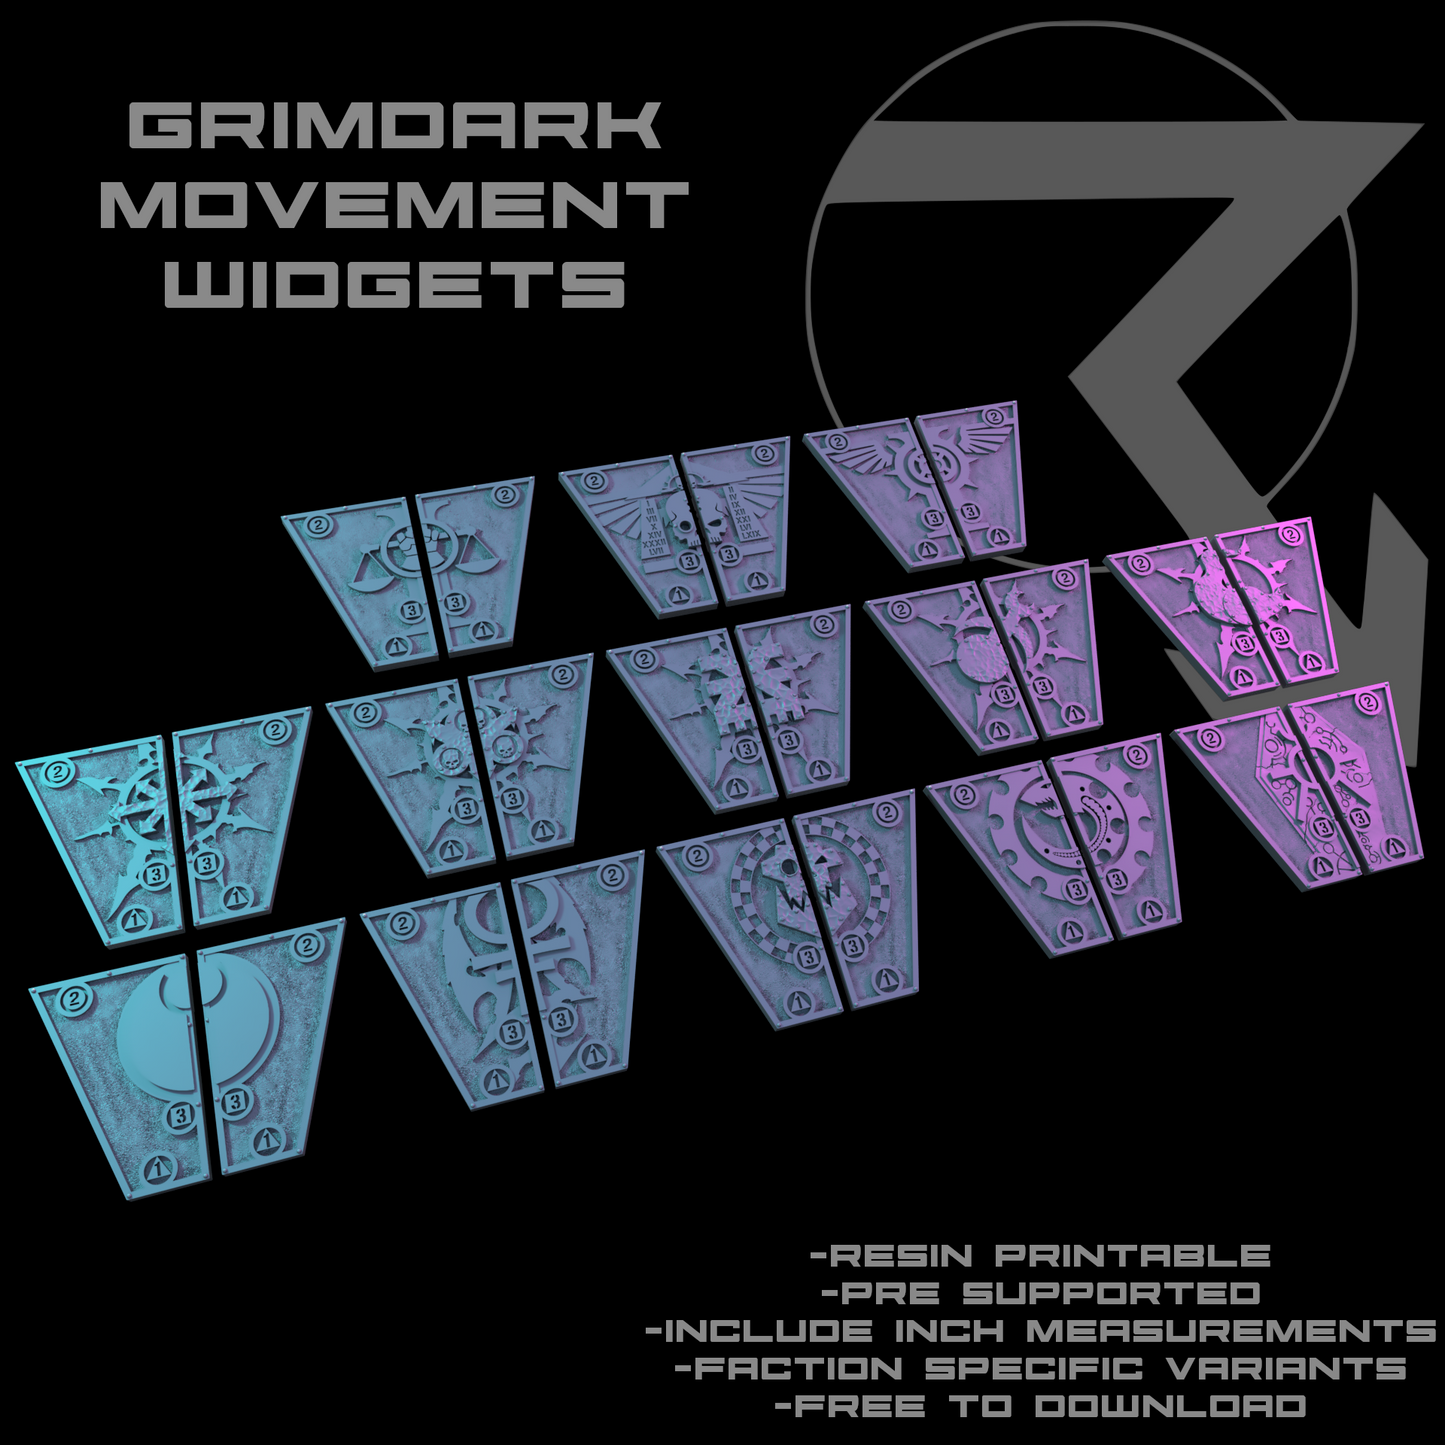 Grimdark Movement Widgets